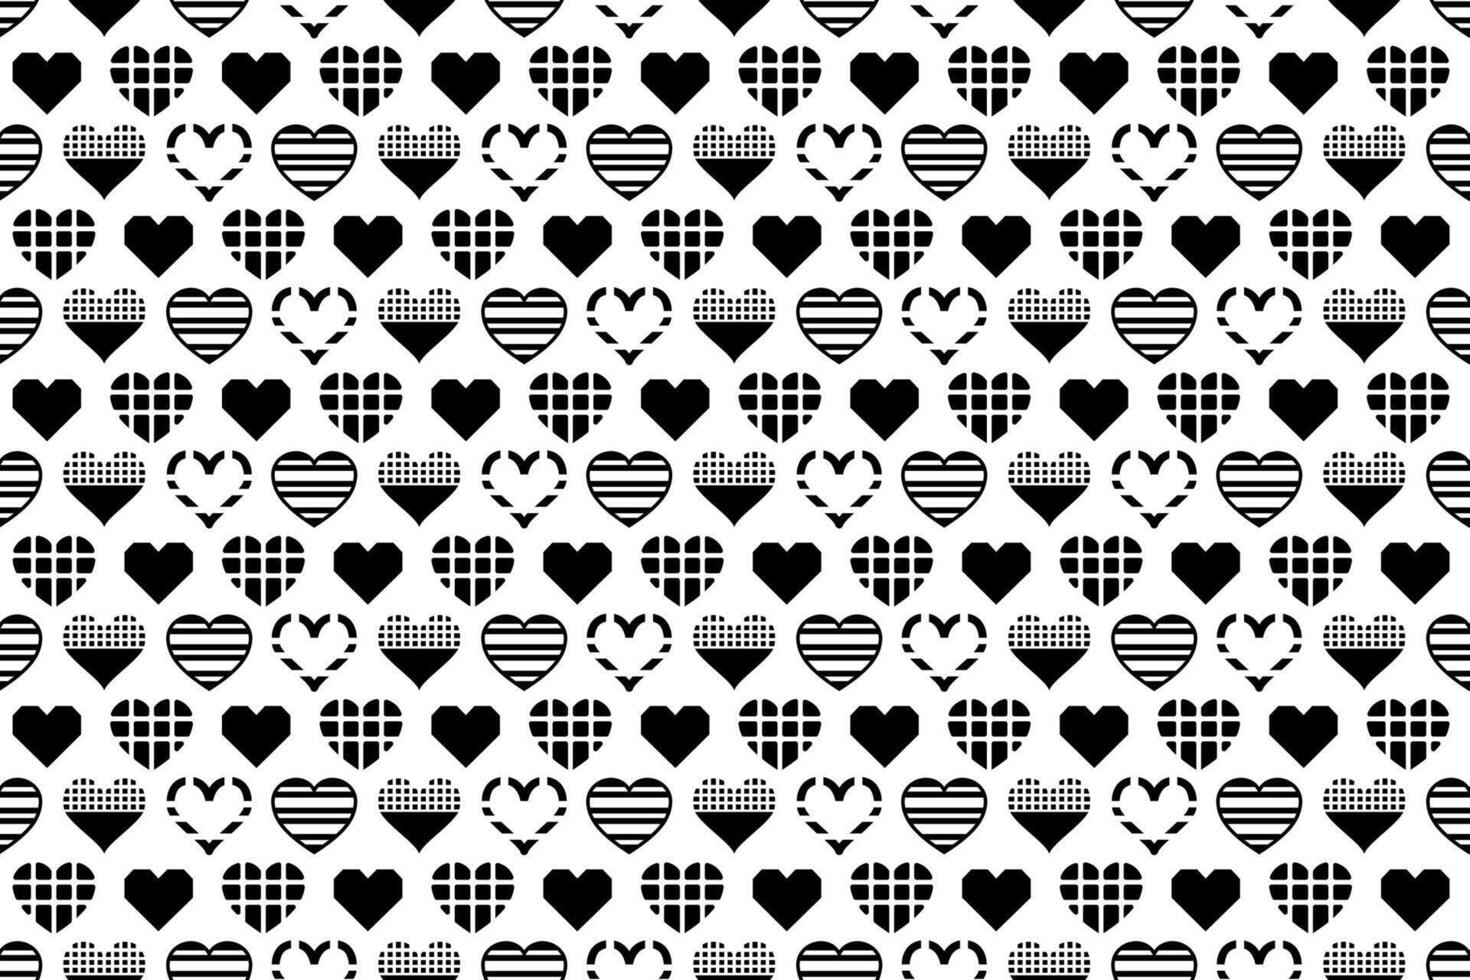 naadloos zwart en wit hart patroon. schattig decoratief behang met hart illustraties, eindeloos herhalen liefde, Valentijn patroon. vector